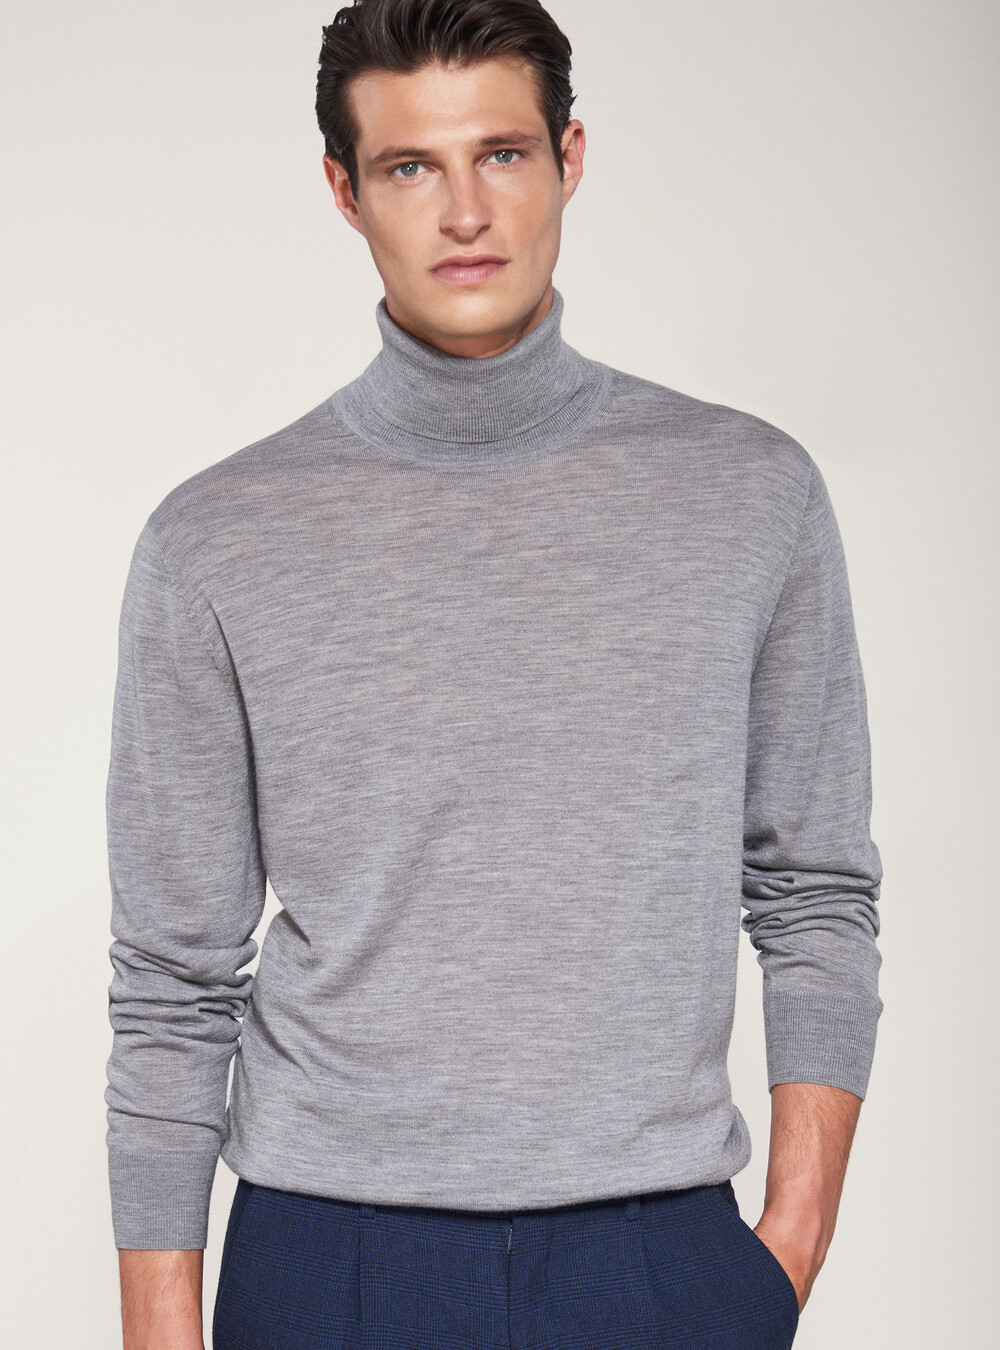 Merino wool turtleneck | GutteridgeEU | Men's Sweaters